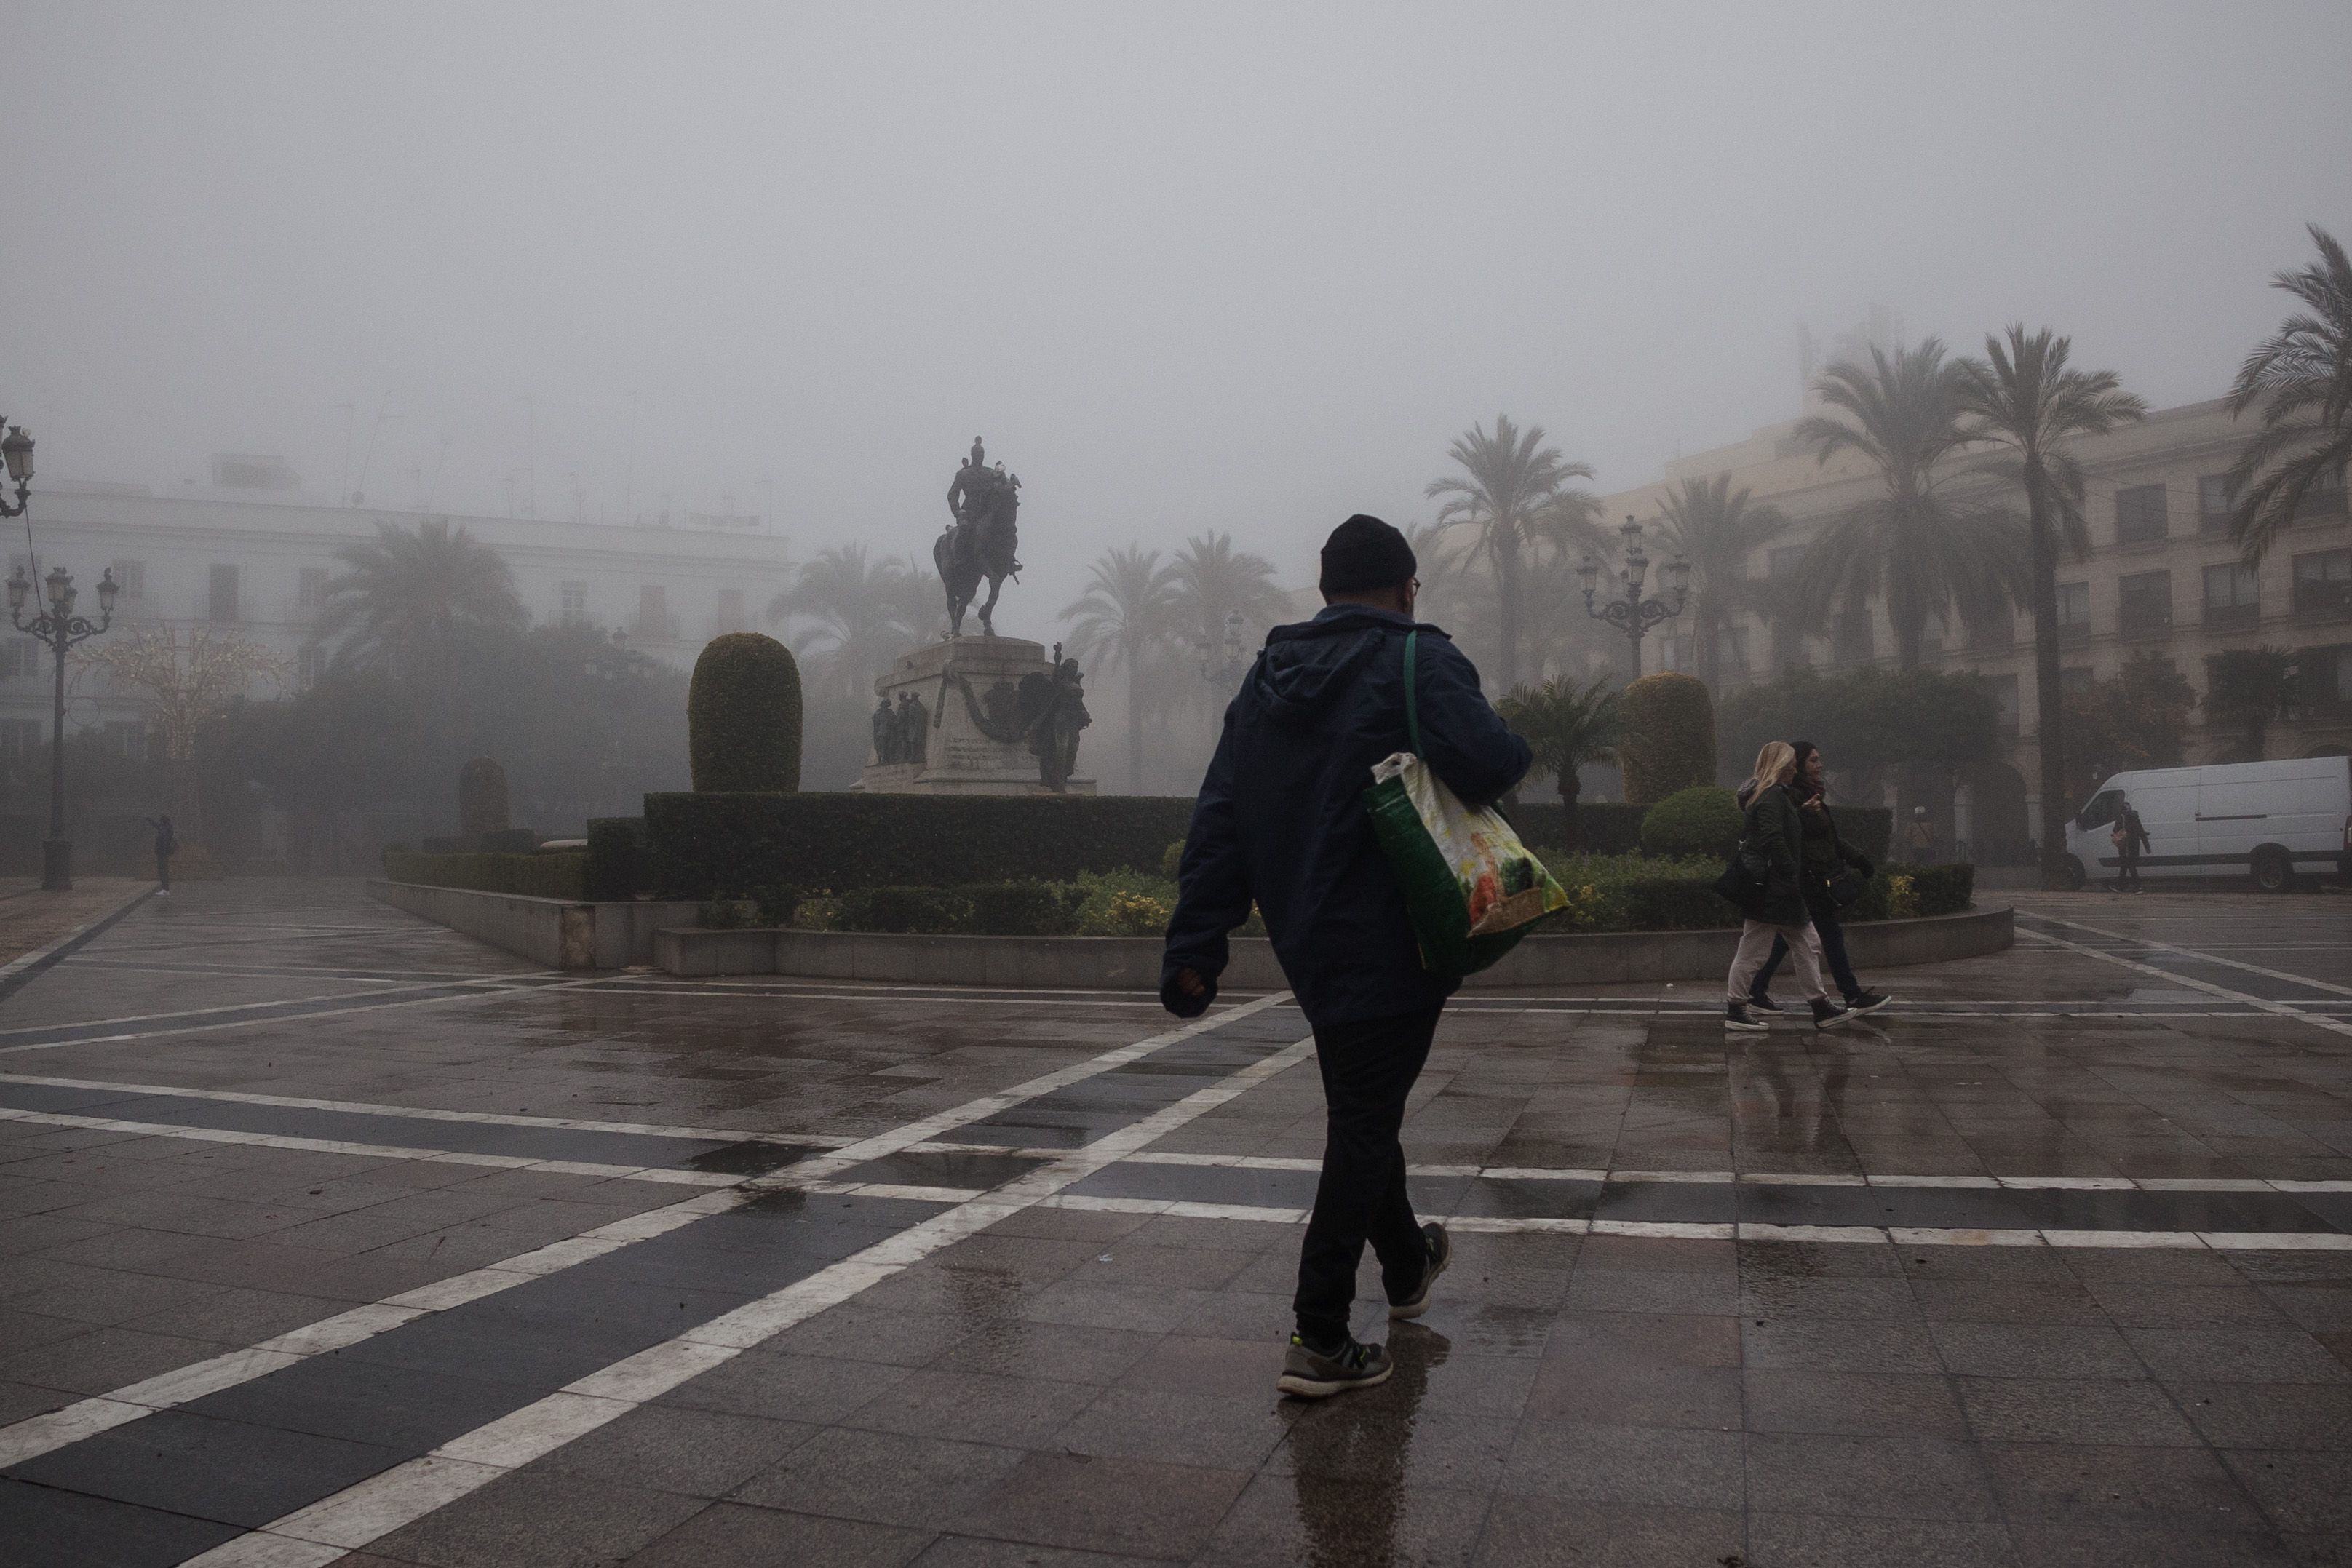 El centro de las ciudades como parques temáticos. La plaza del Arenal de Jerez envuelta en la niebla.